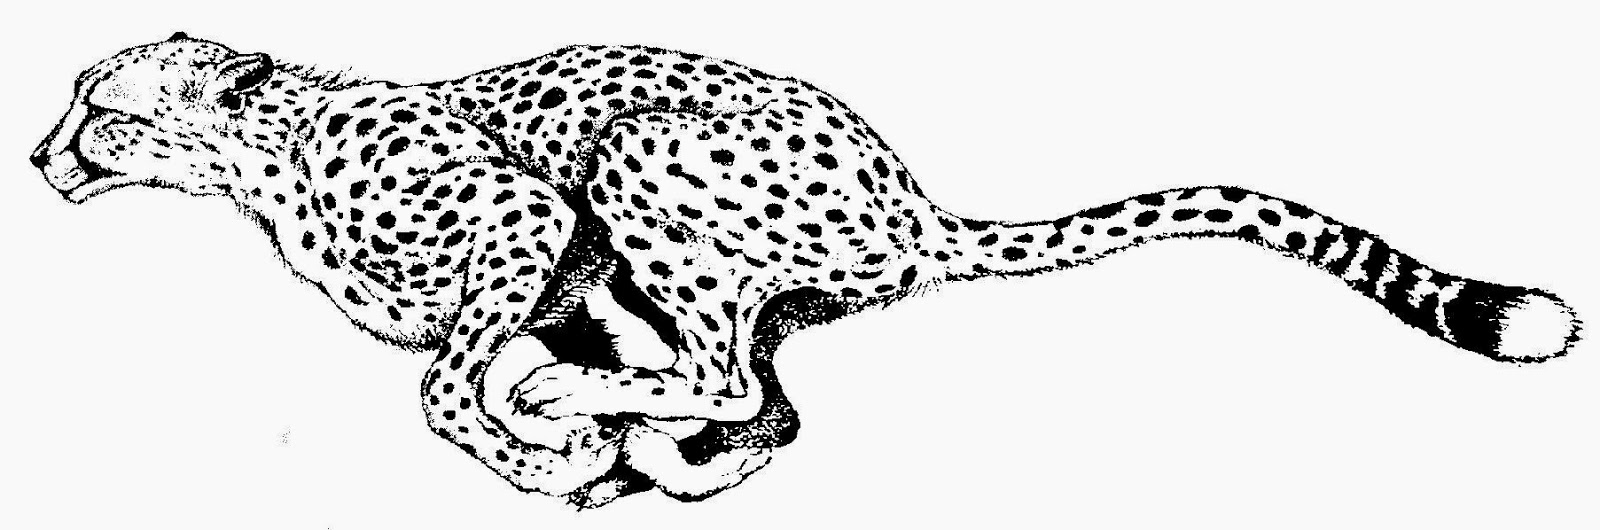 Cheetah print black and white - Cheetah Clip Art